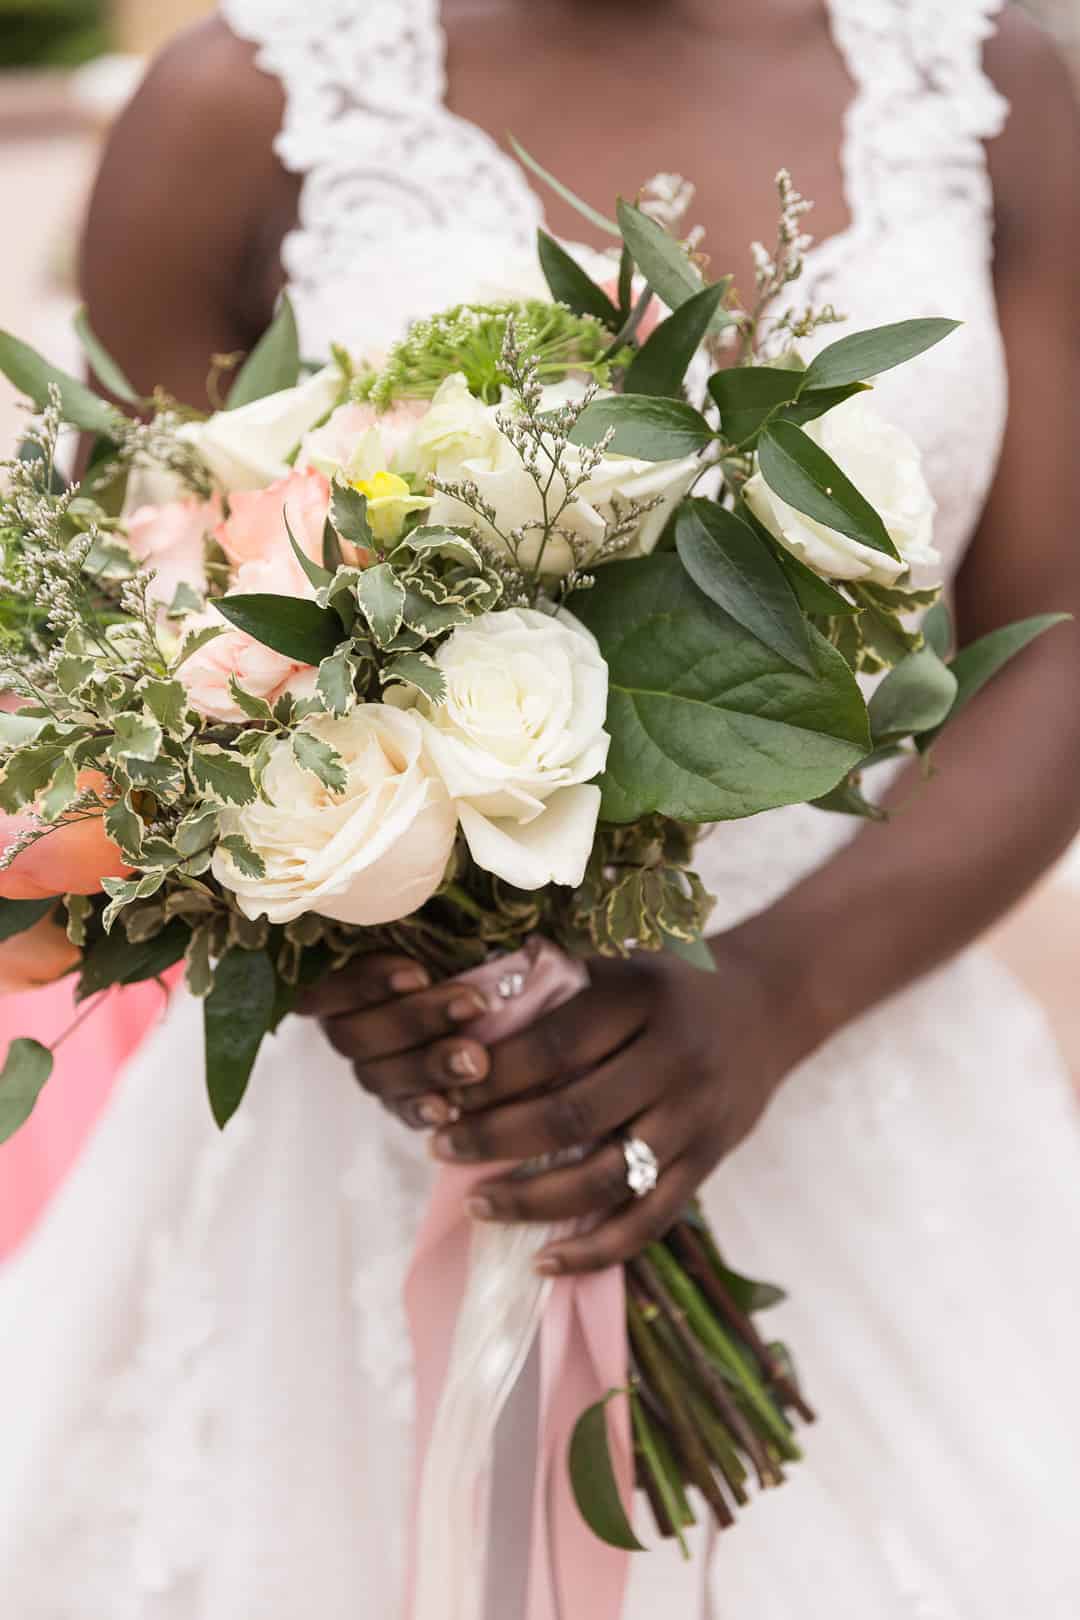 ANIMAL LOVER LLAMA WEDDING IDEAS | Bespoke-Bride: Wedding Blog